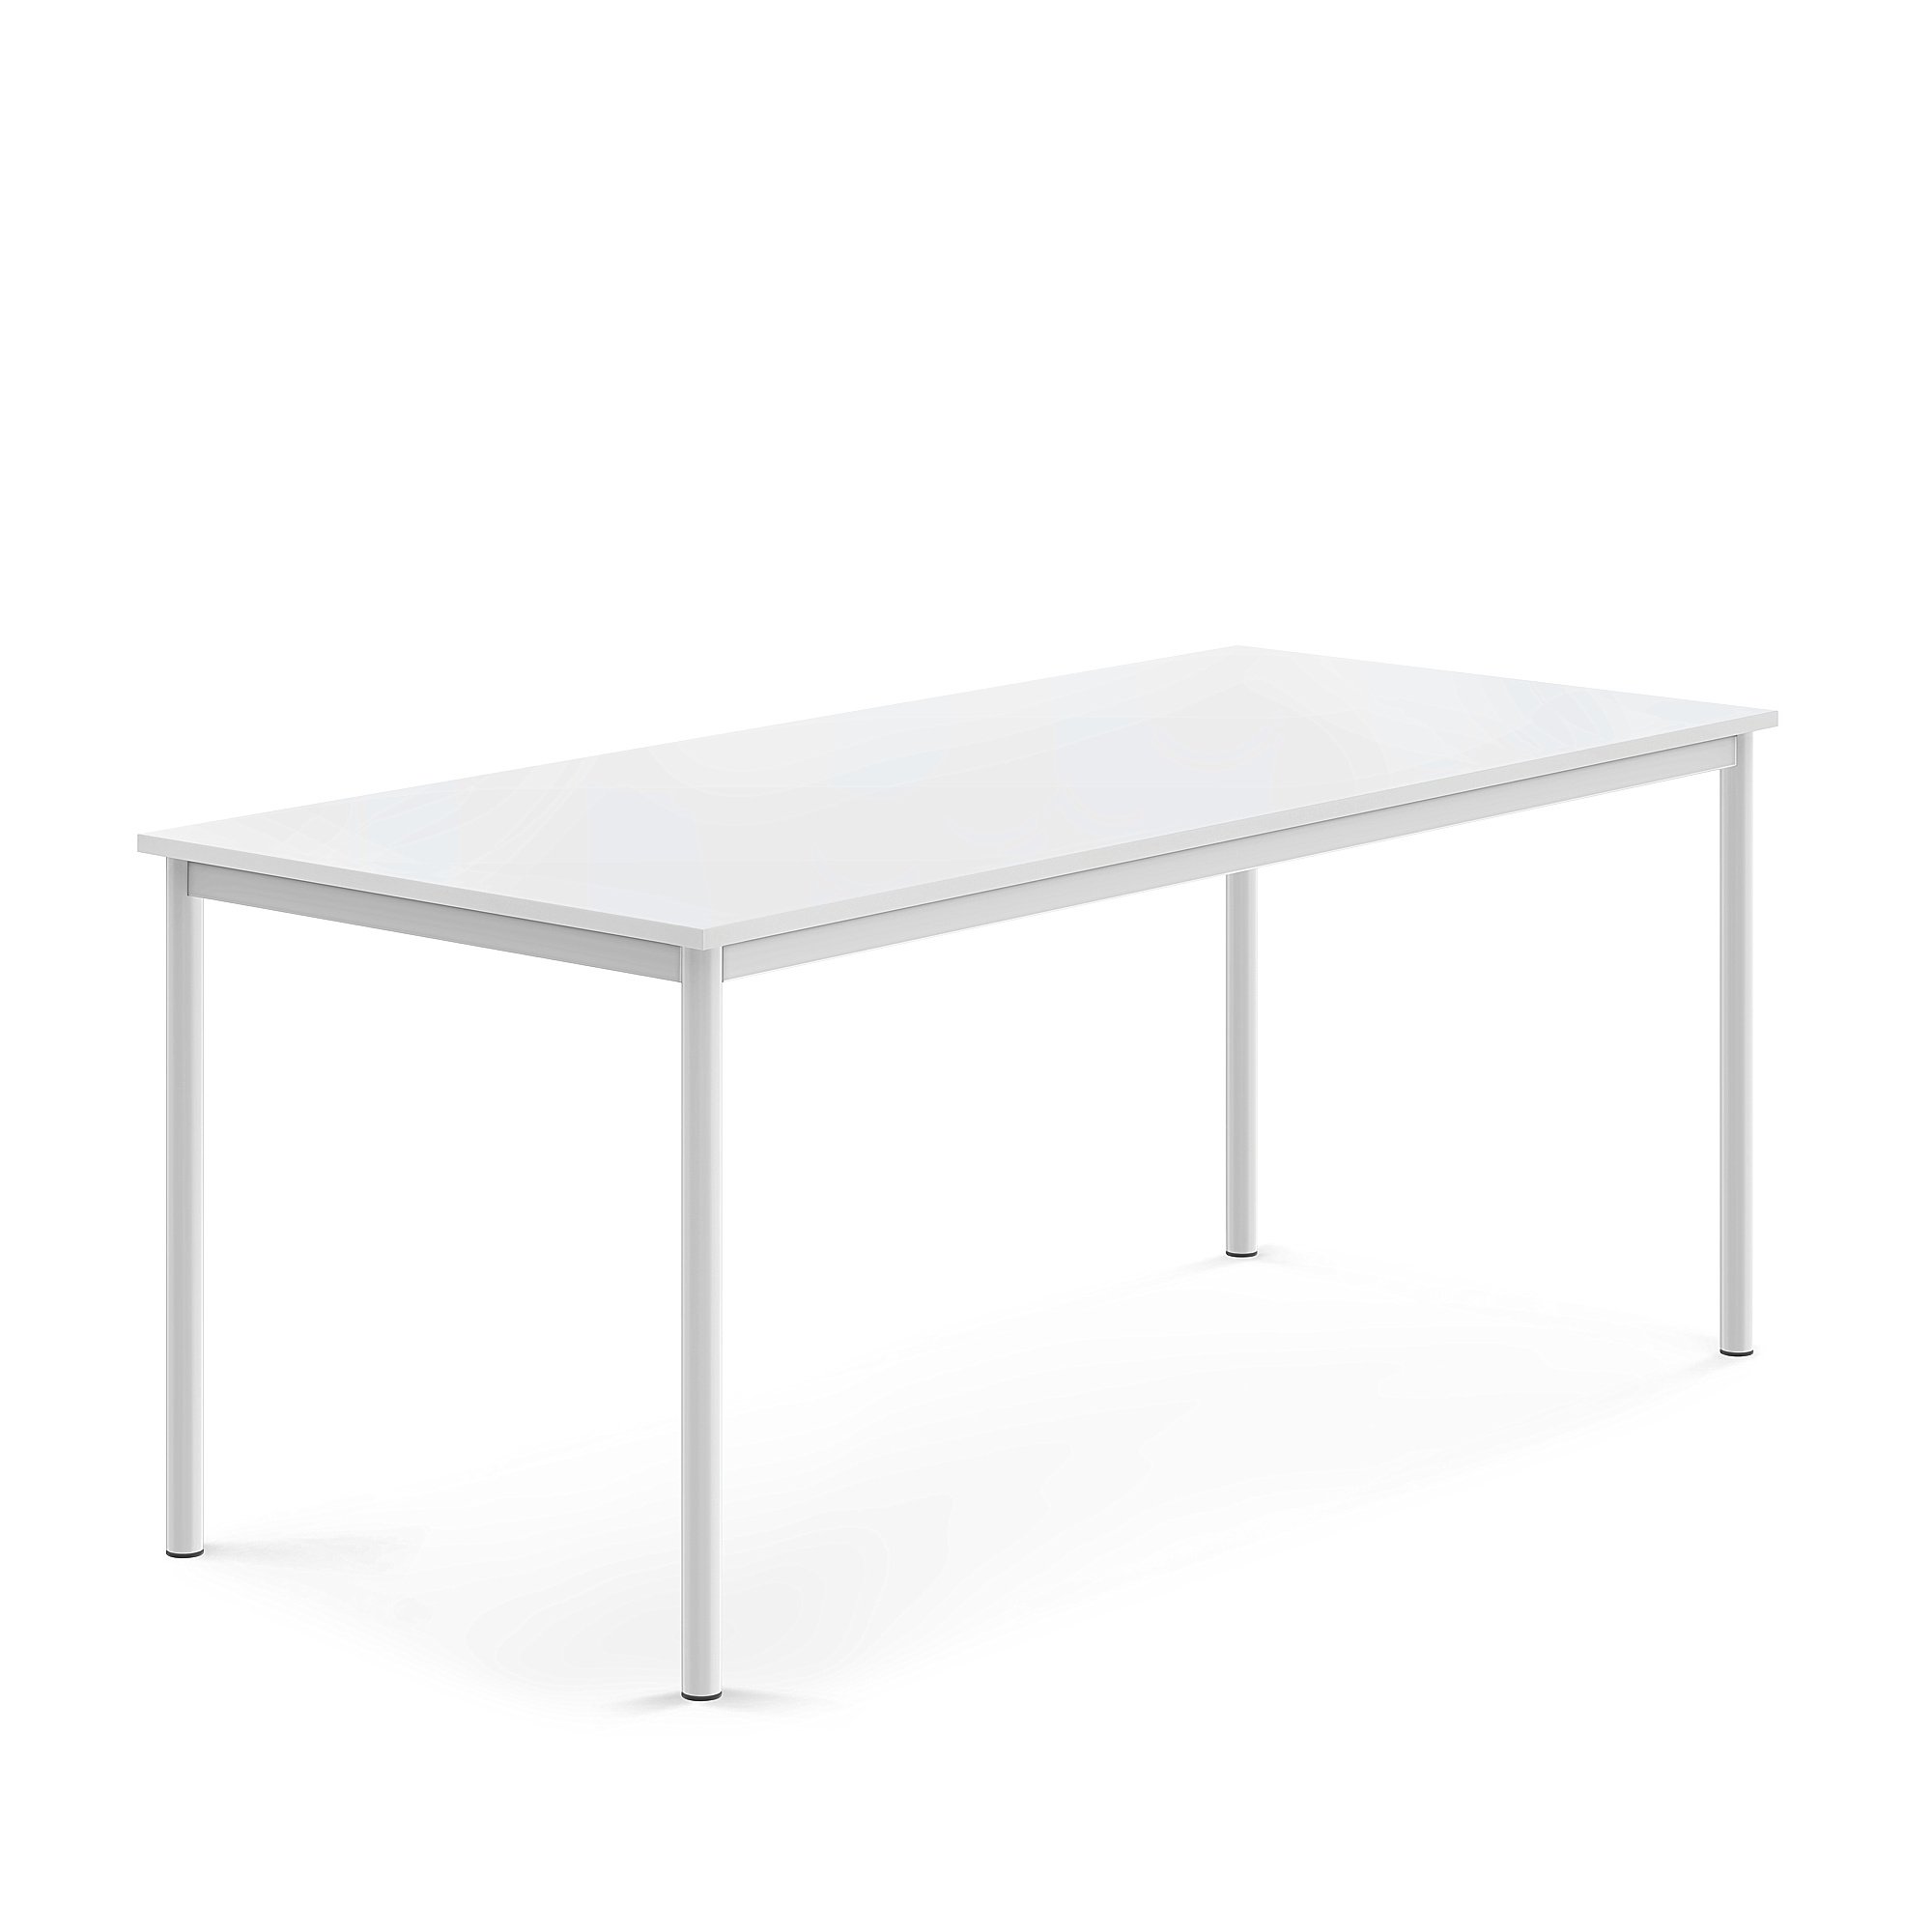 Stůl BORÅS, 1800x800x720 mm, bílé nohy, HPL deska, bílá